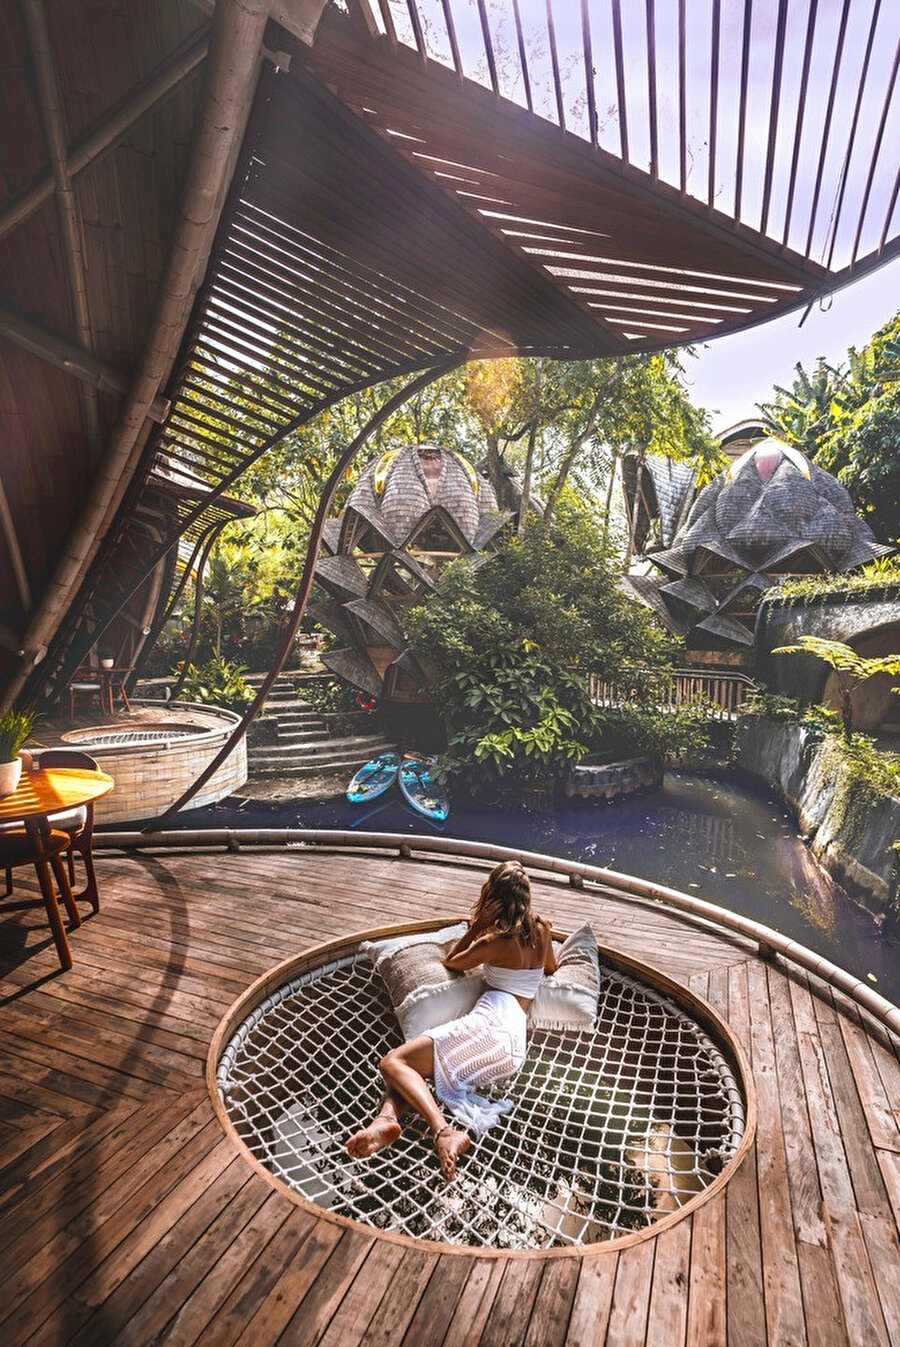 Ulaman Eco Luxury Resort’da yer yer file bantlar yer alıyor. 